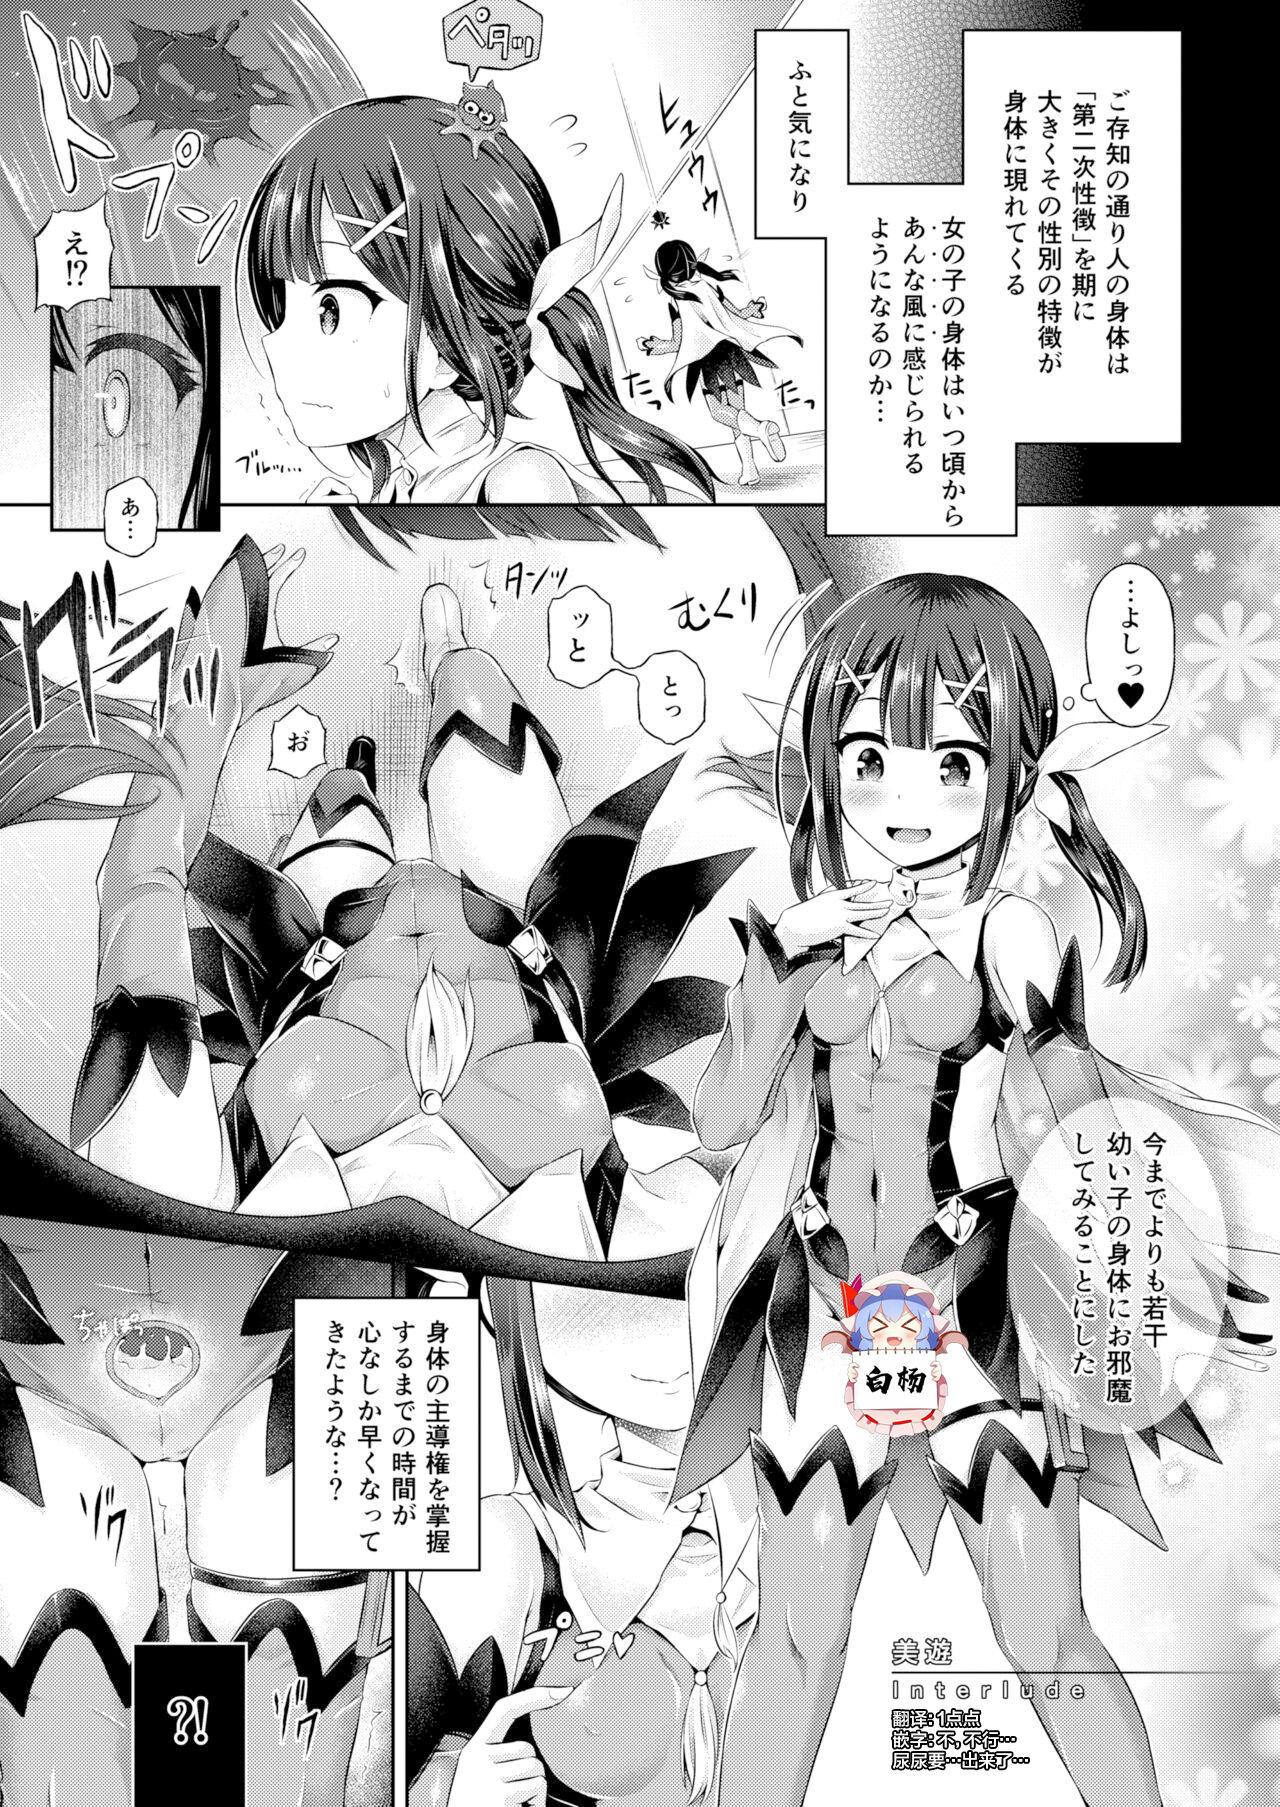 Cumming Kimi ni Naru - Fate kaleid liner prisma illya Amateur Cumshots - Page 1